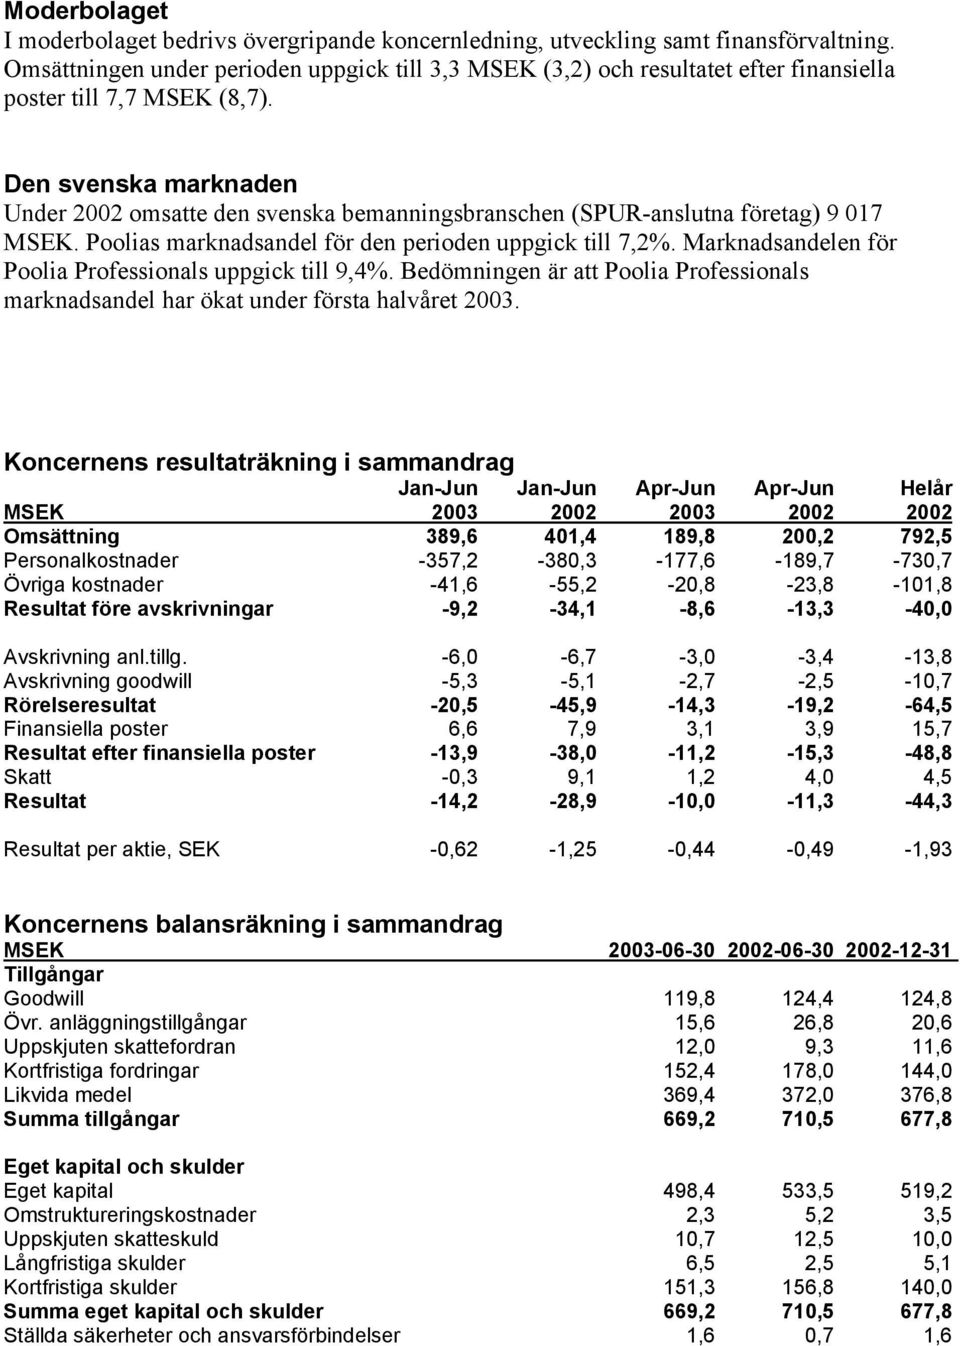 Den svenska marknaden Under 2002 omsatte den svenska bemanningsbranschen (SPUR-anslutna företag) 9 017 MSEK. Poolias marknadsandel för den perioden uppgick till 7,2%.